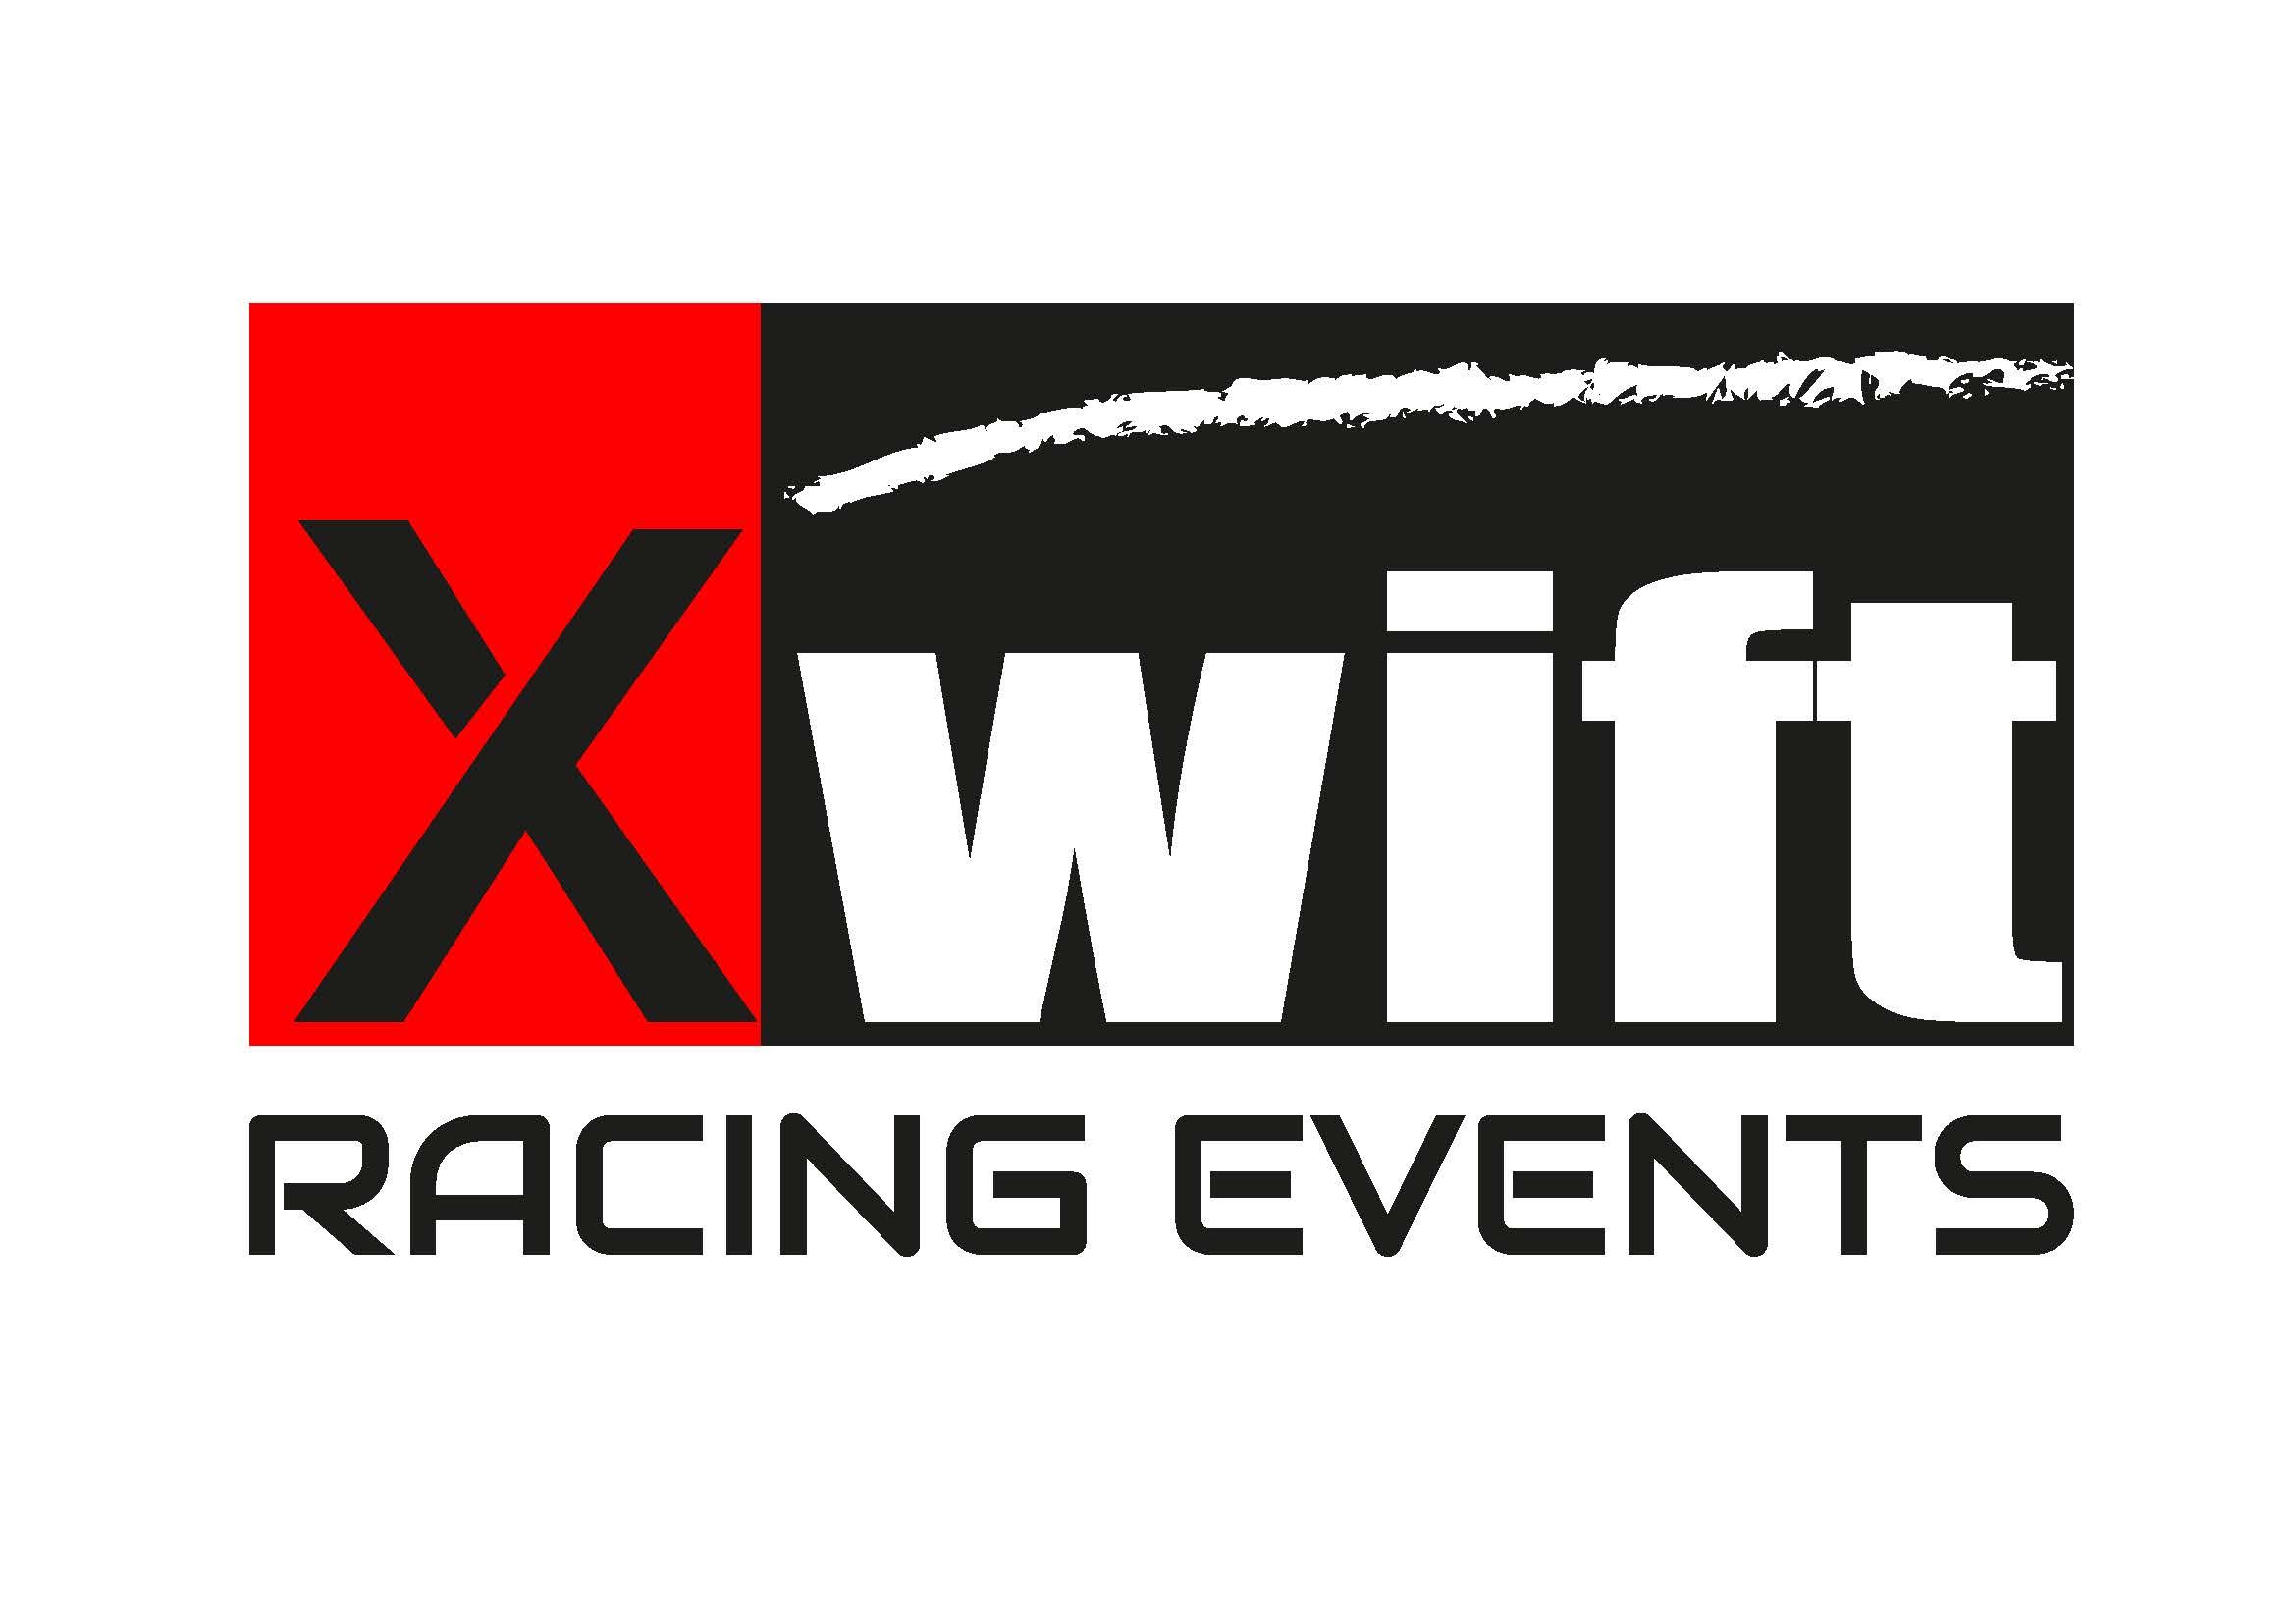 Première en Belgique: Xwift Racing Events au départ des 24 Heures de Zolder avec une Praga R1T evo.